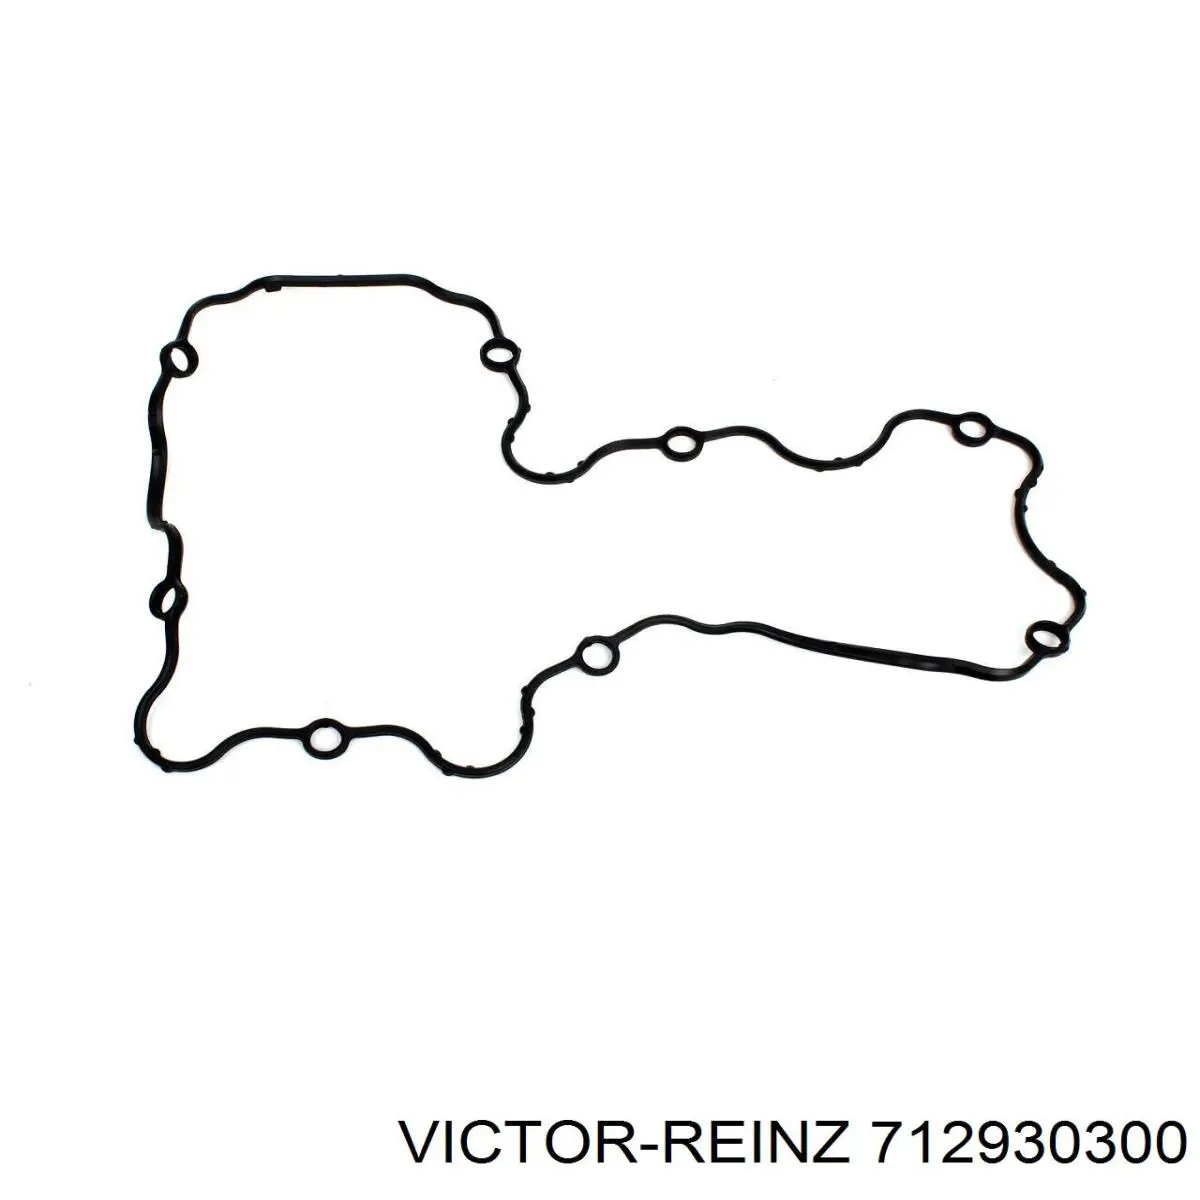 71-29303-00 Victor Reinz junta de la tapa de válvulas del motor